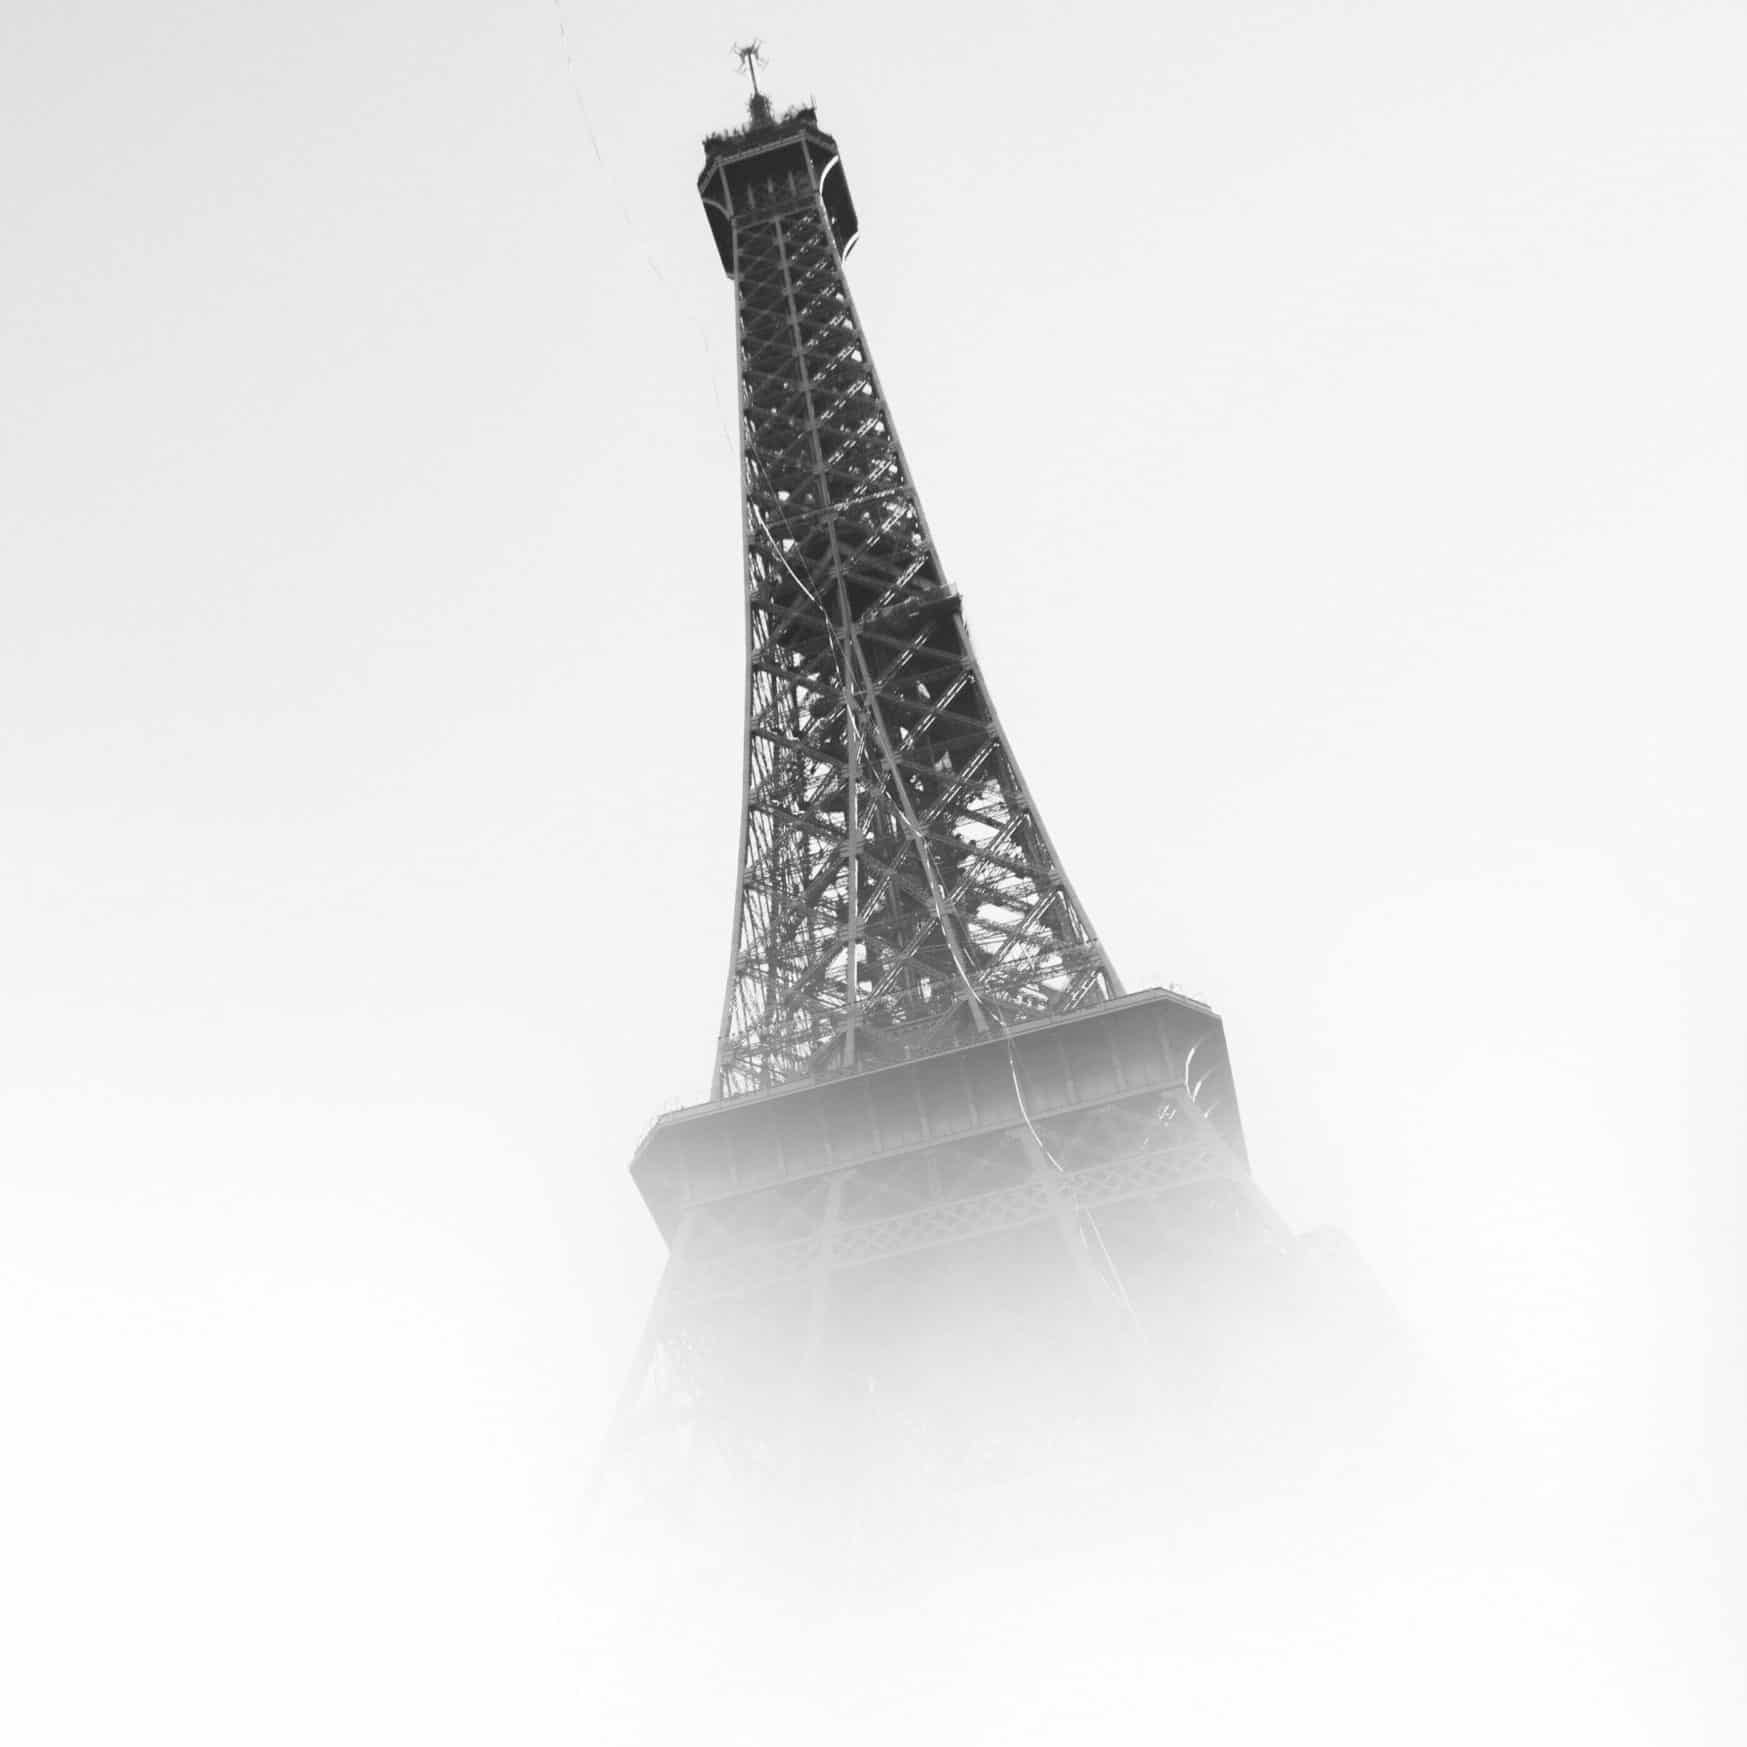 Paris sous la brume